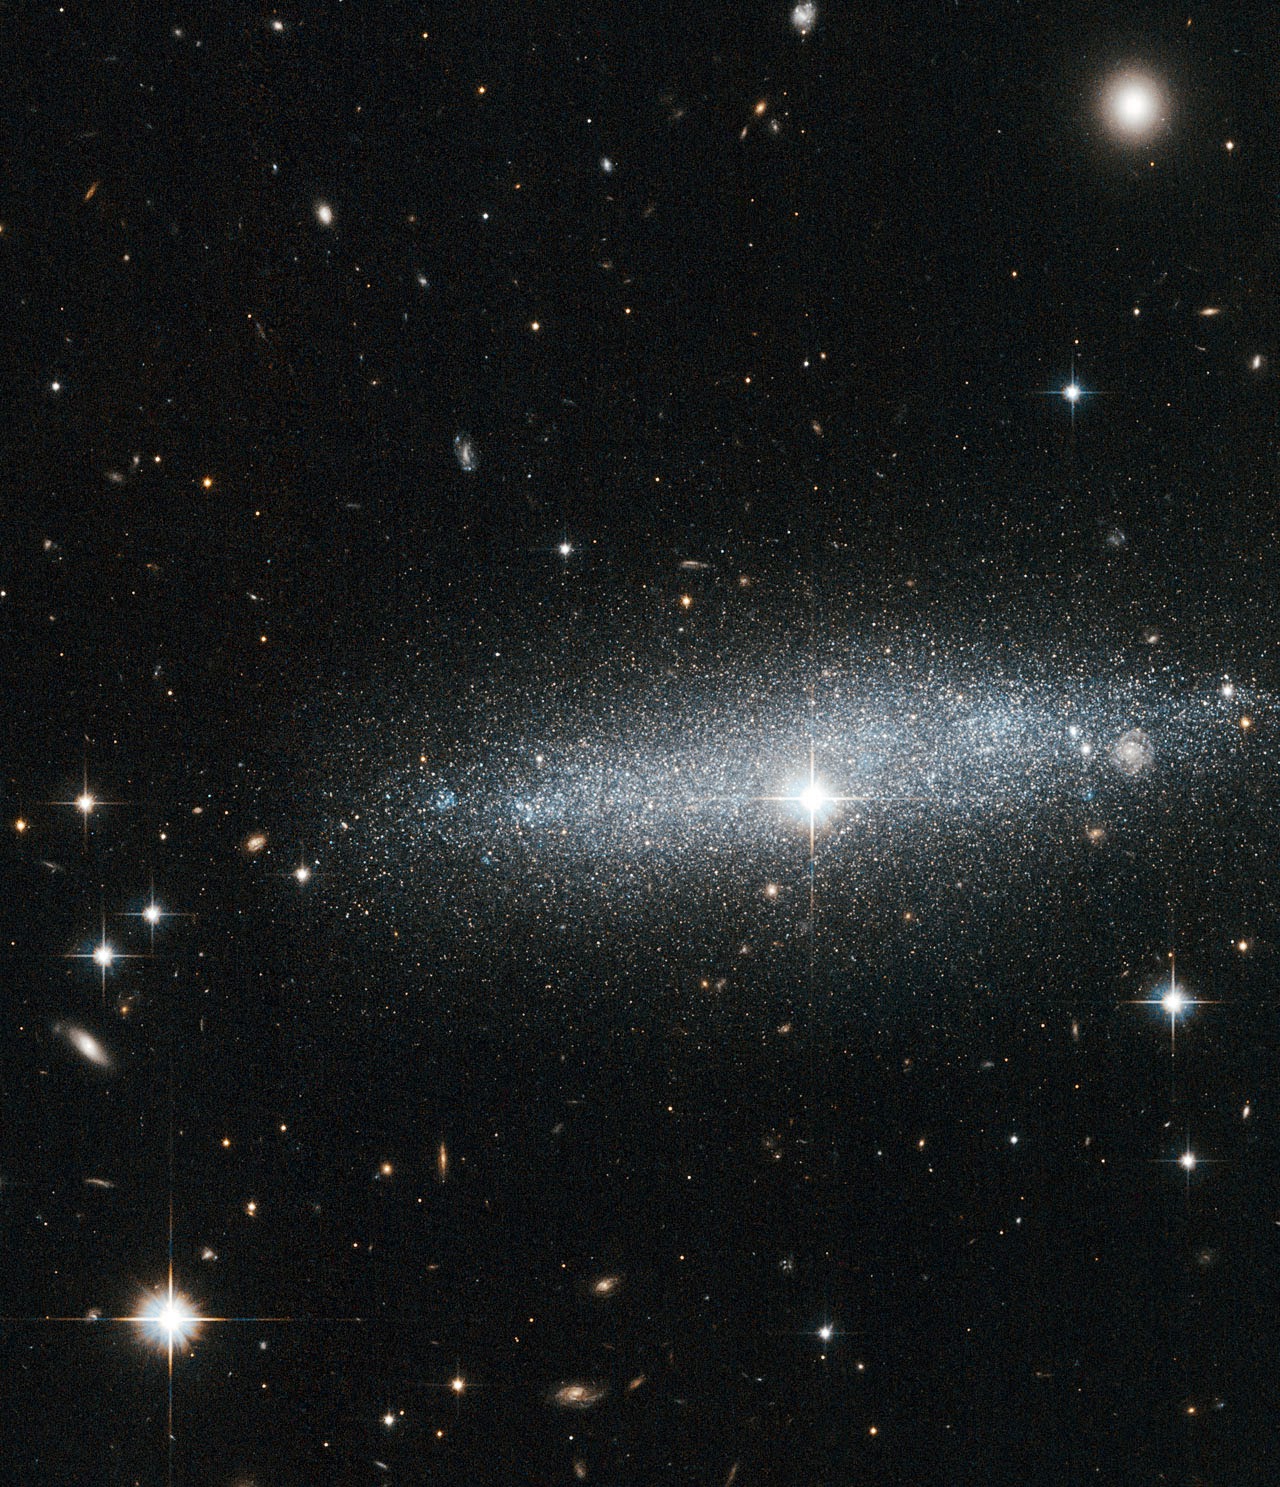 Hubble's Glitter galaxy: The ESO 318-13 galaxy